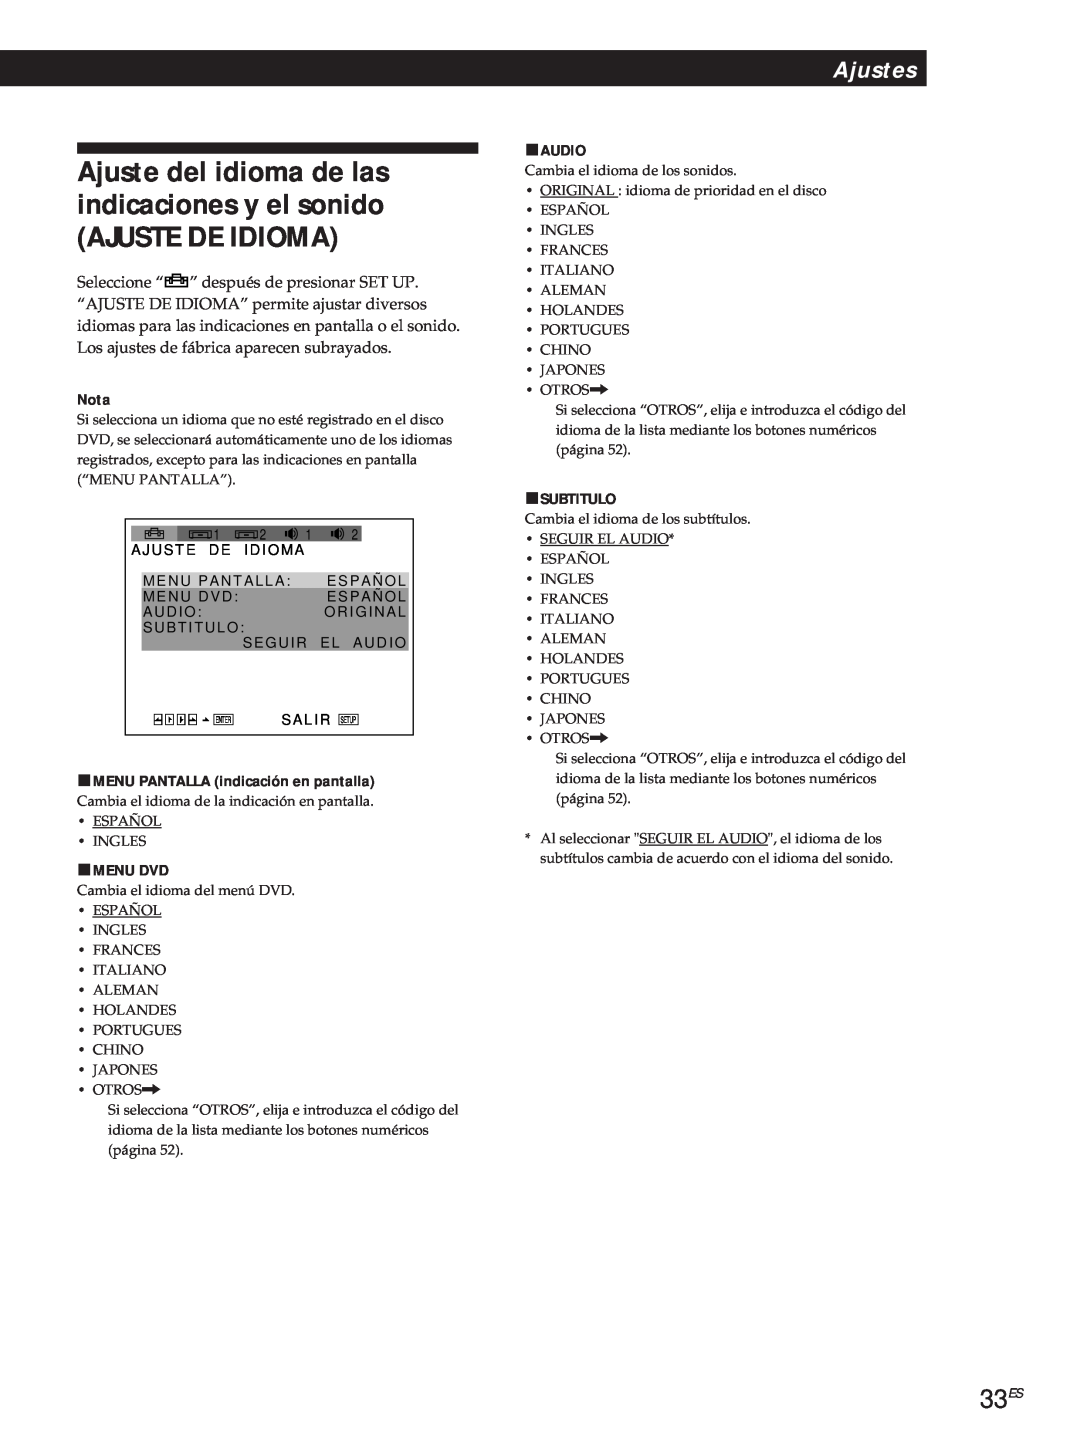 Sony DVP-S500D manual Ajuste De Idioma, Ajuste del idioma de las indicaciones y el sonido, 33ES, Ajustes, Nota, pAUDIO 